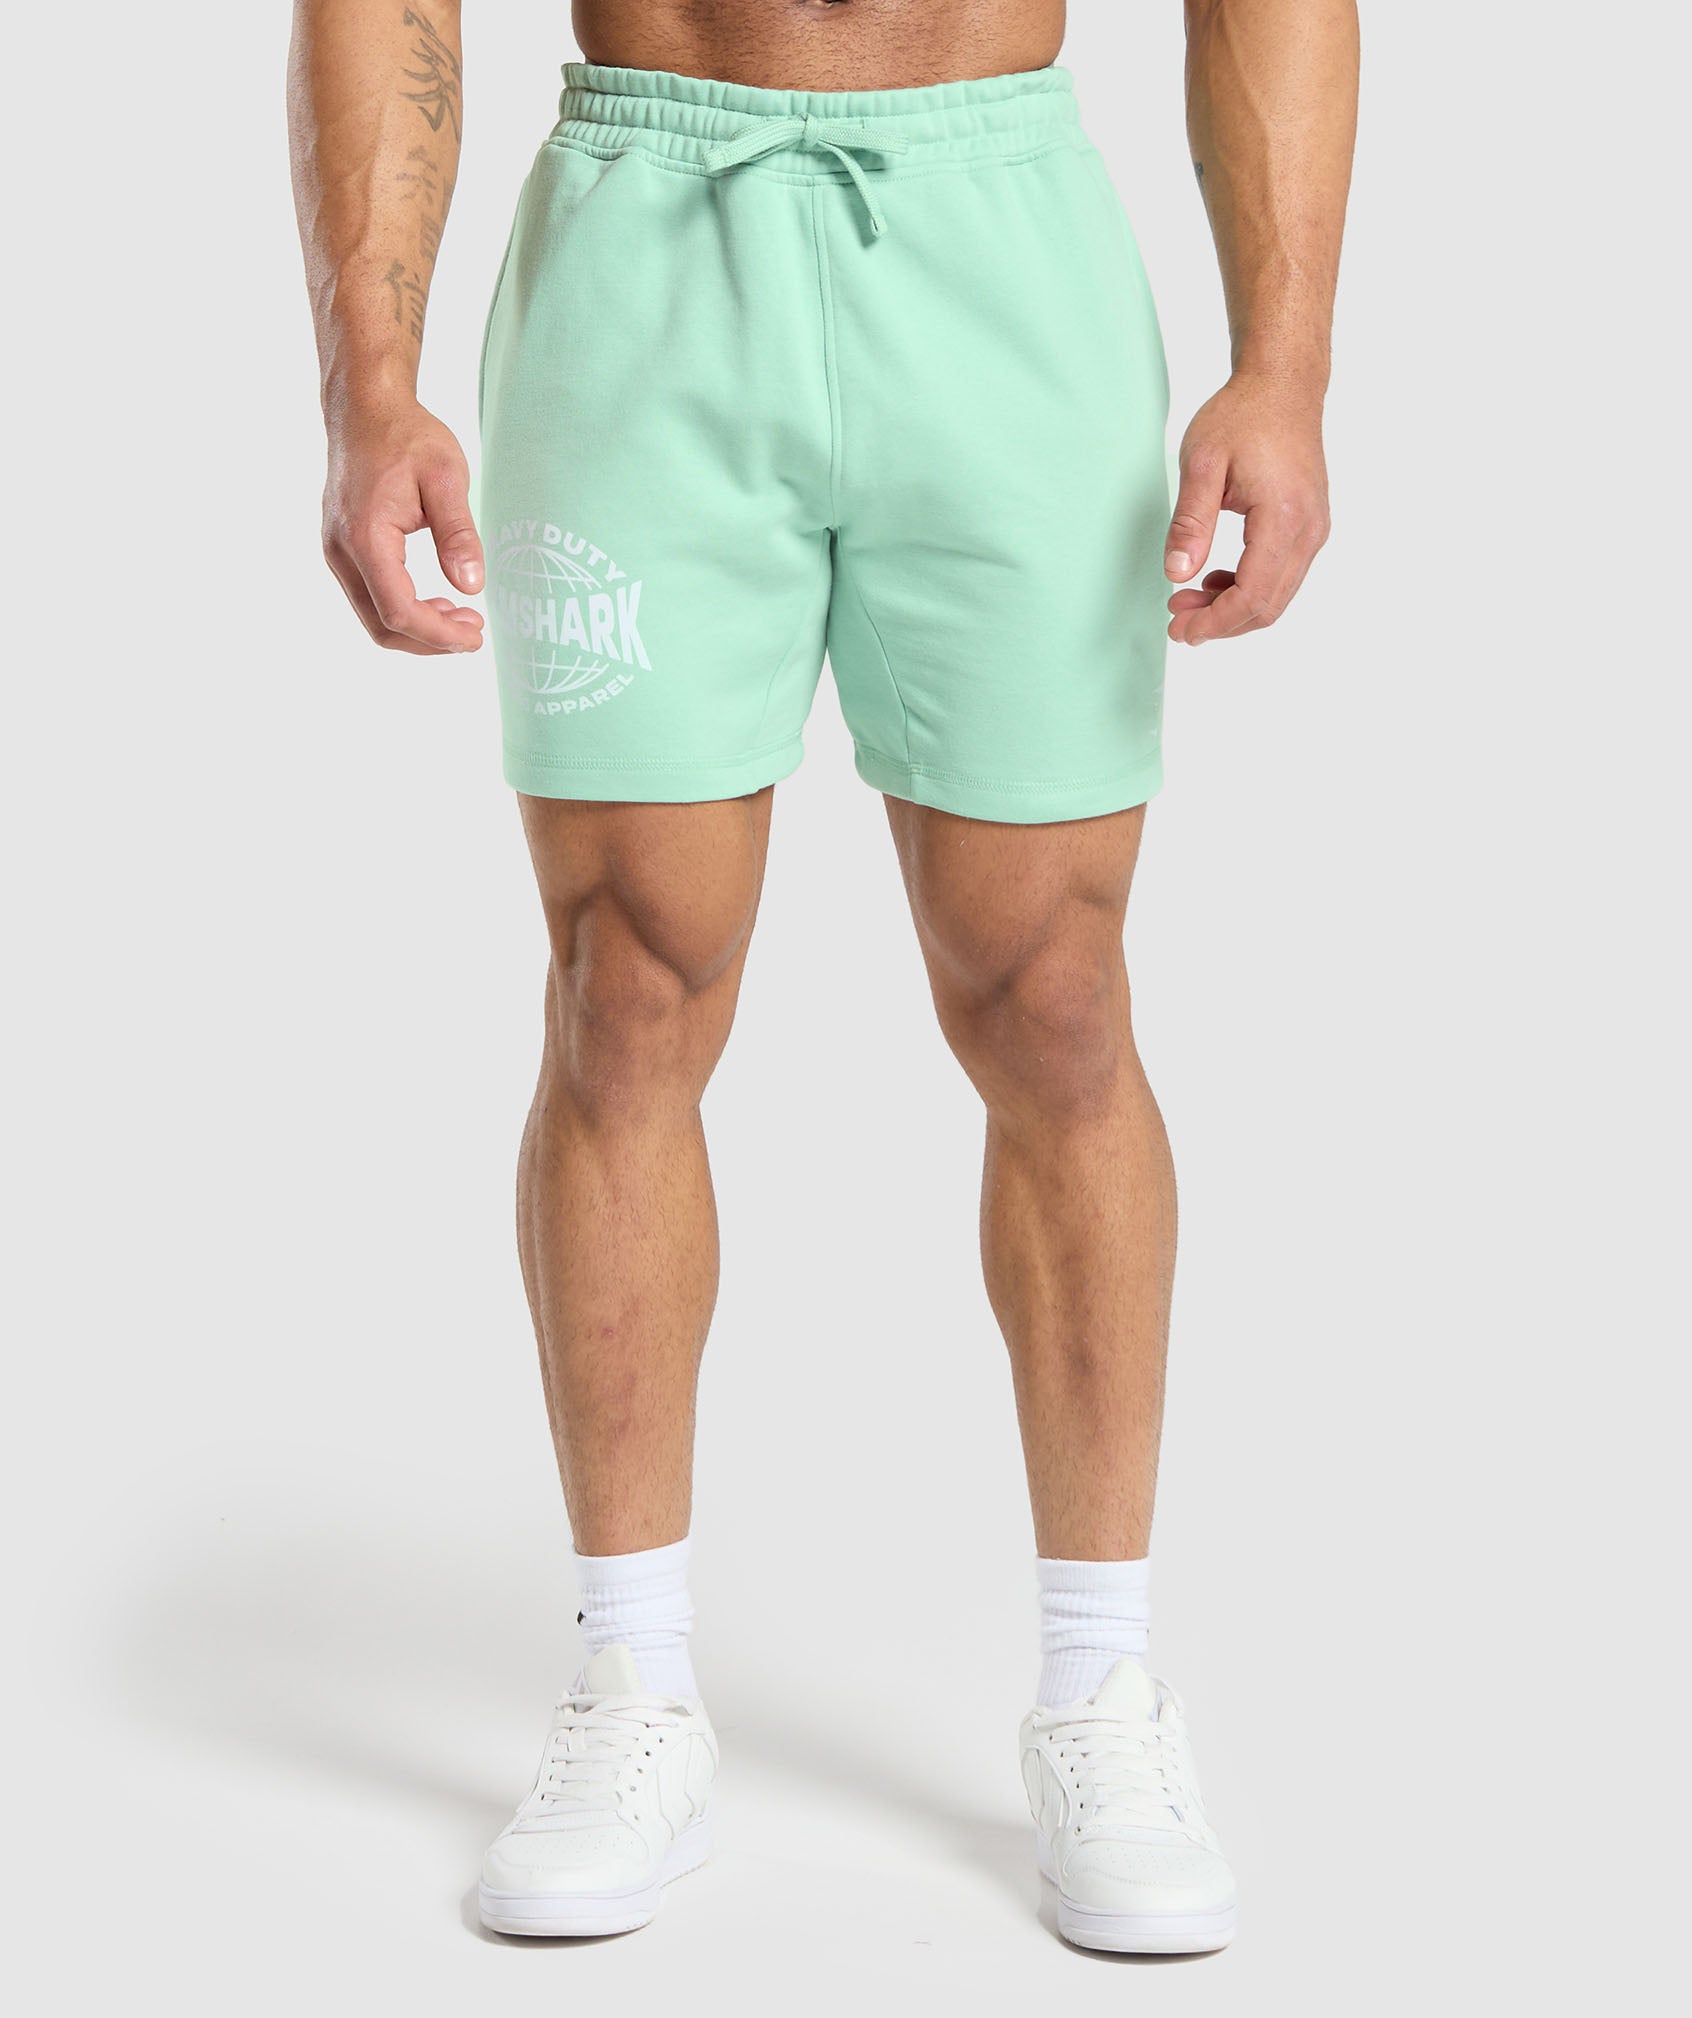 Heavy Duty Apparel 7" Shorts in Lido Green